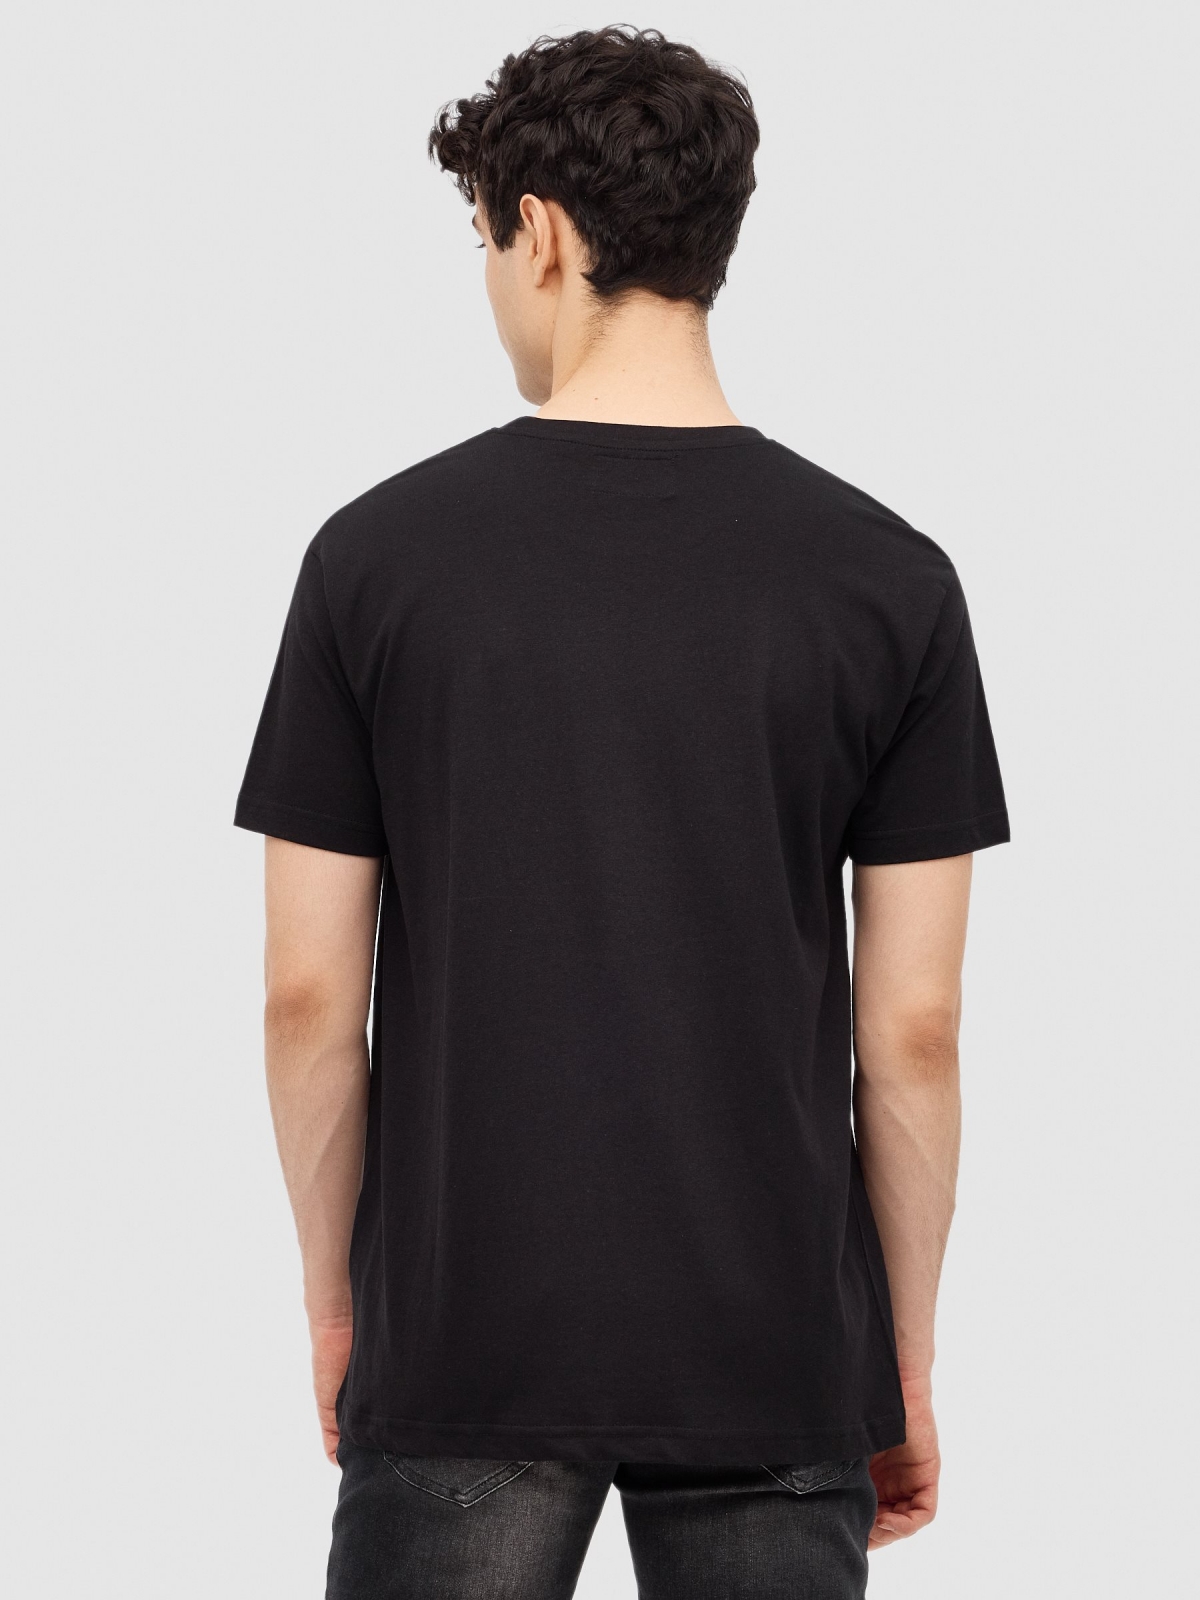 T-shirt Espaço preto vista meia traseira